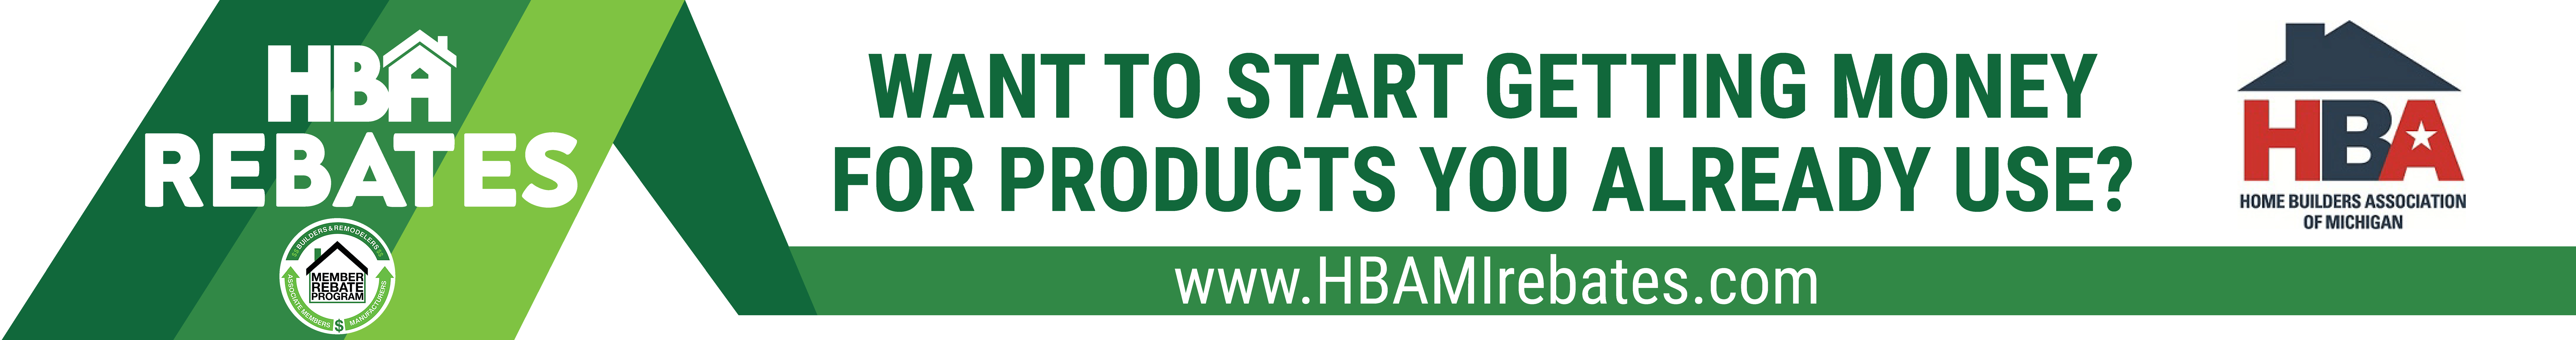 HBAMI - HBA Rebates Banner